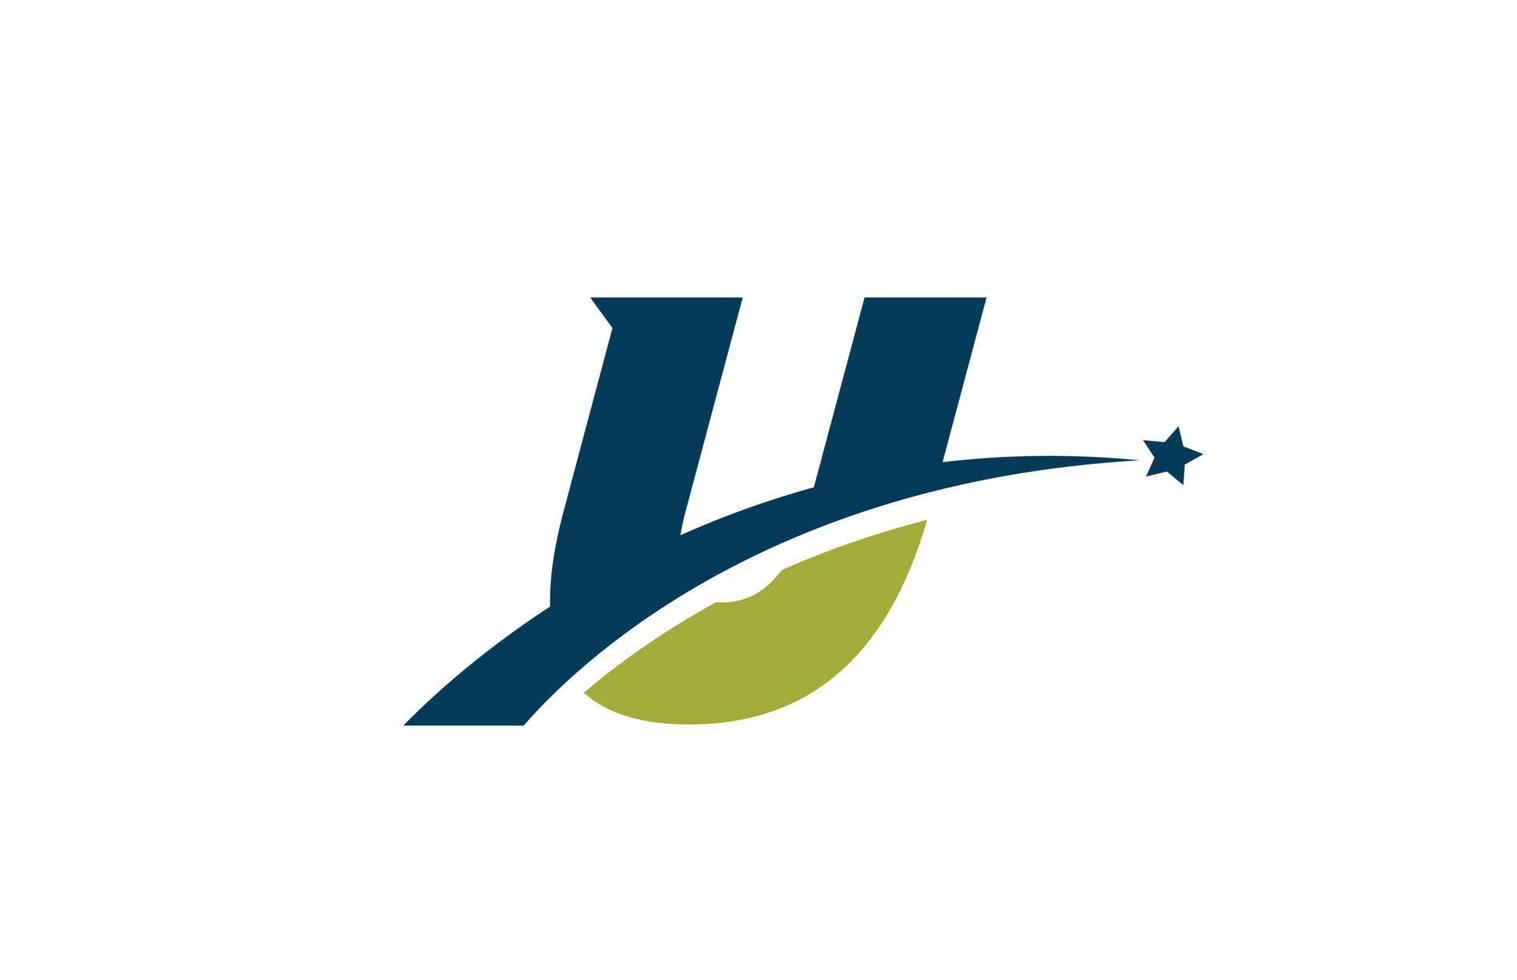 Blaues grünes u-Alphabet-Buchstaben-Logo-Symbol mit Stern. kreatives Design für Unternehmen oder Unternehmen mit Swoosh vektor